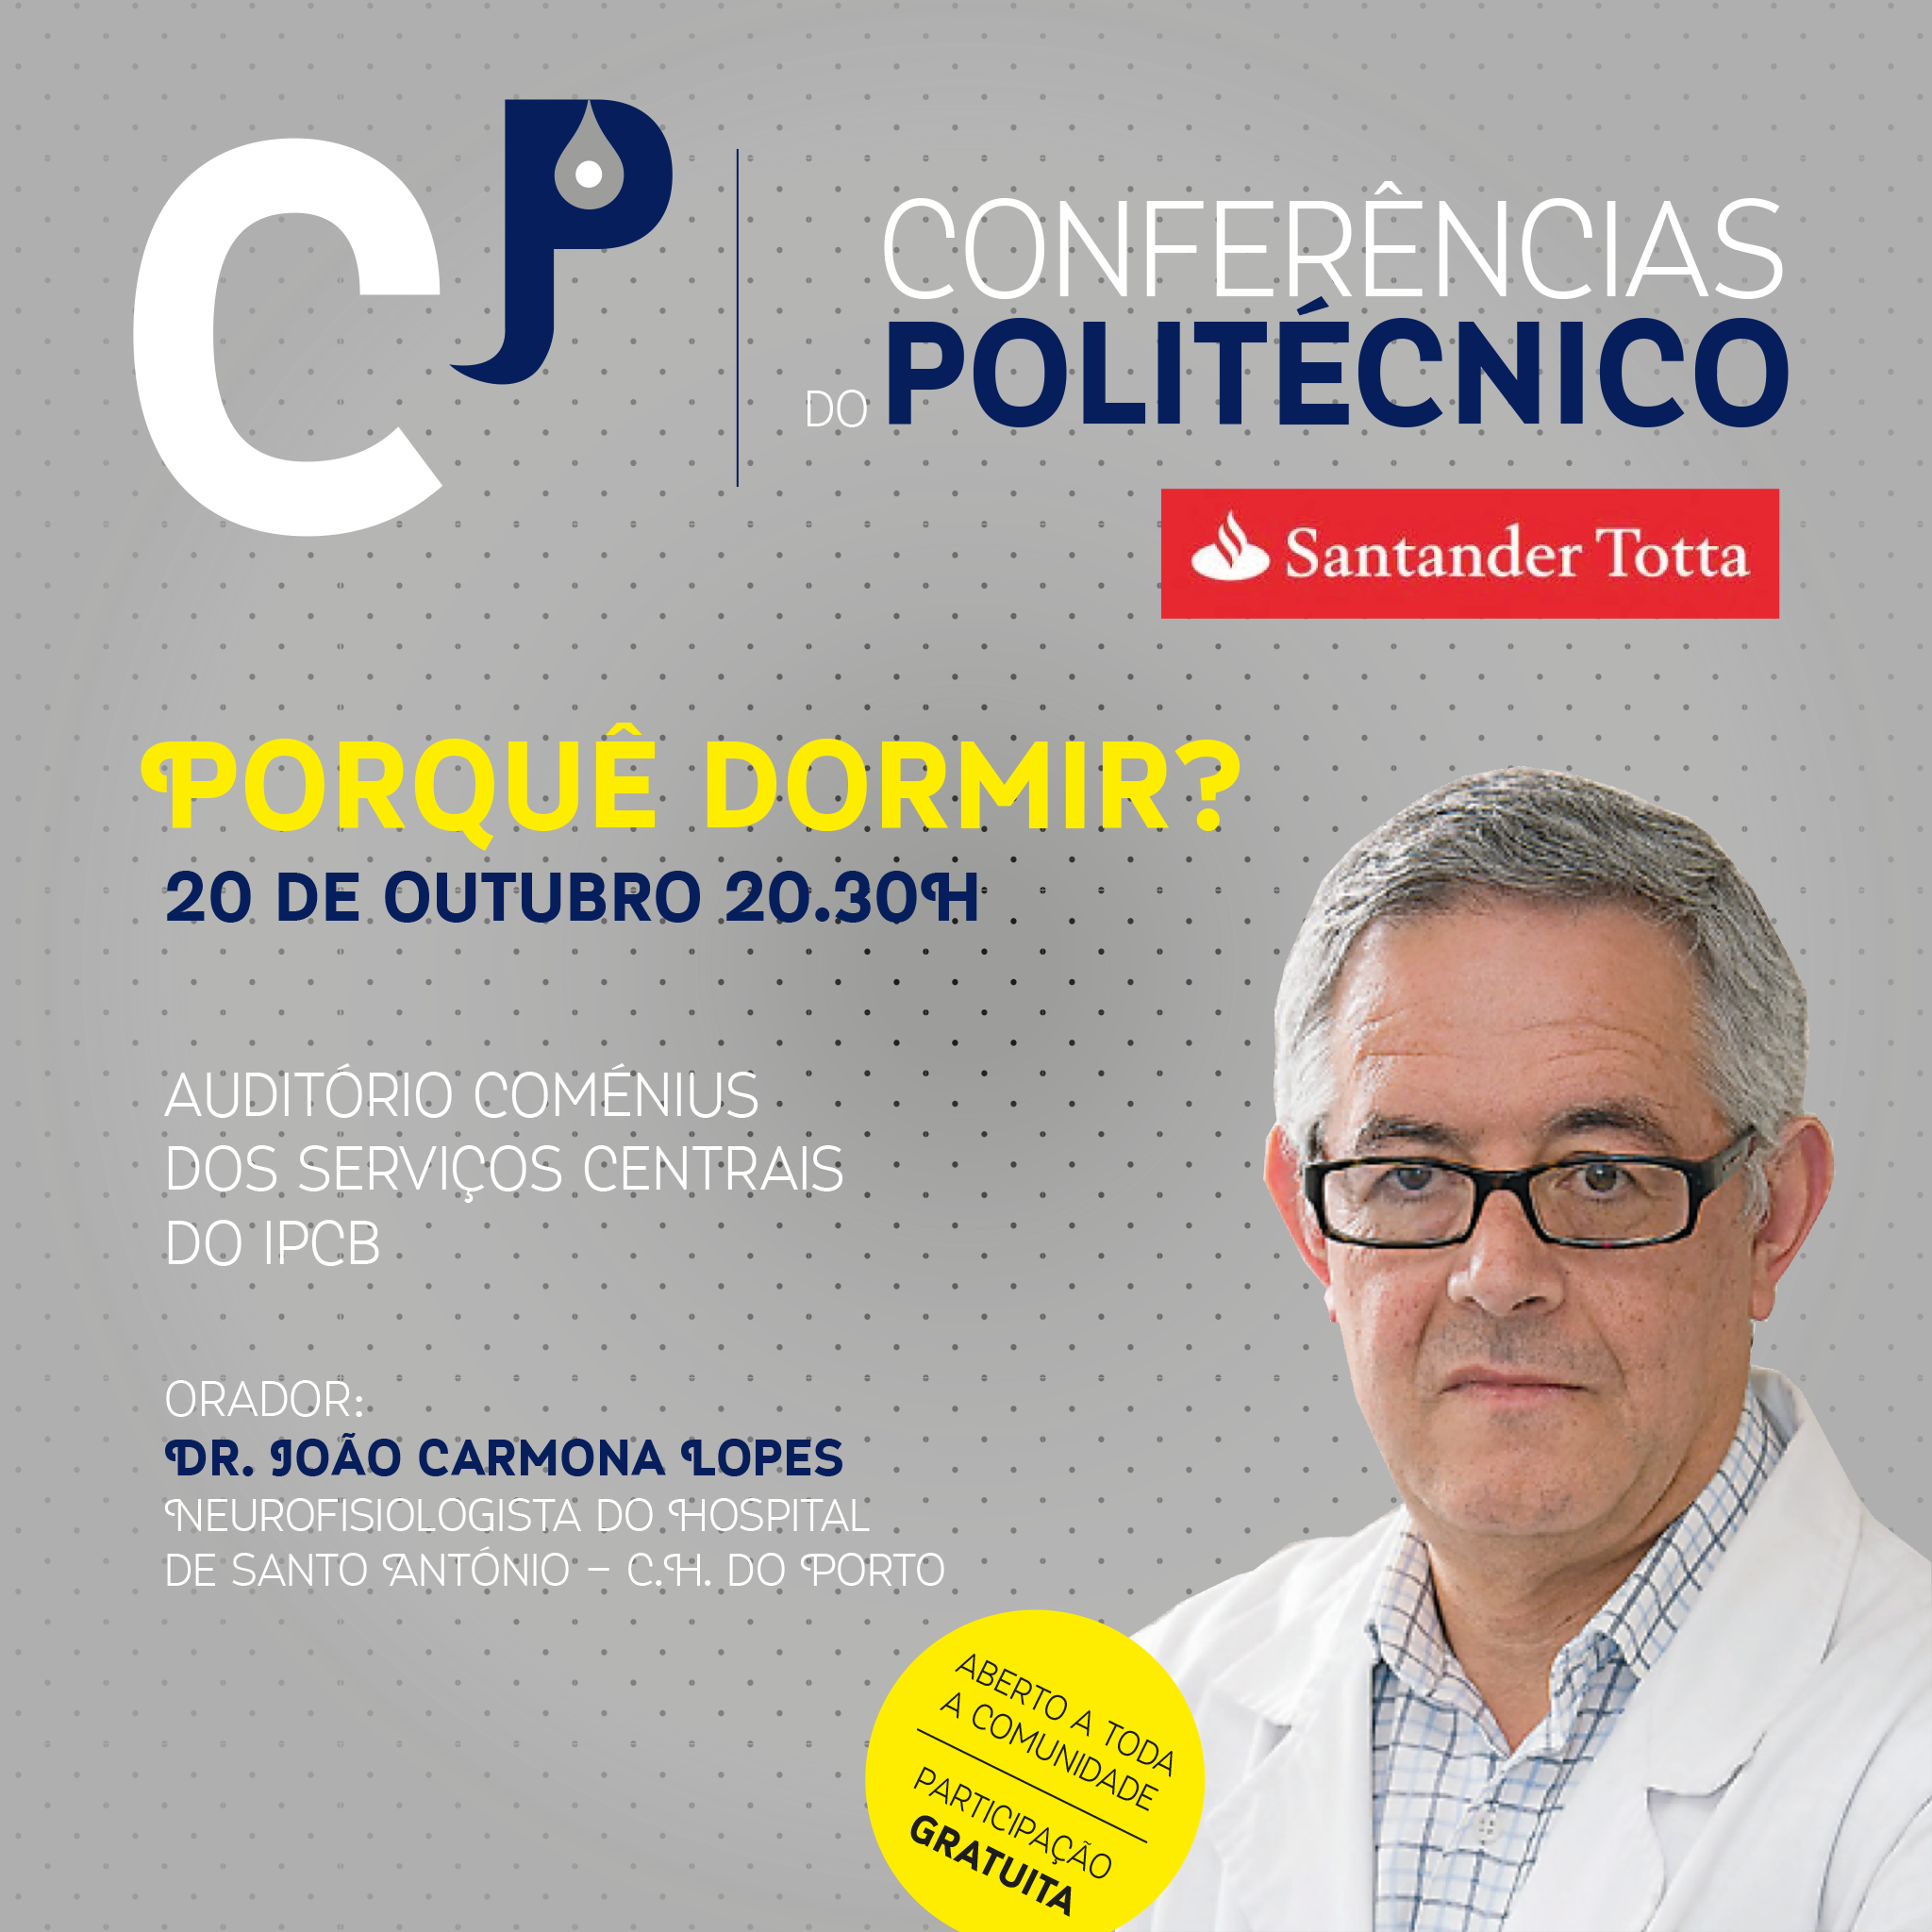 Castelo Branco: Conferências do Politécnico/ Banco Santander “Porquê Dormir?”